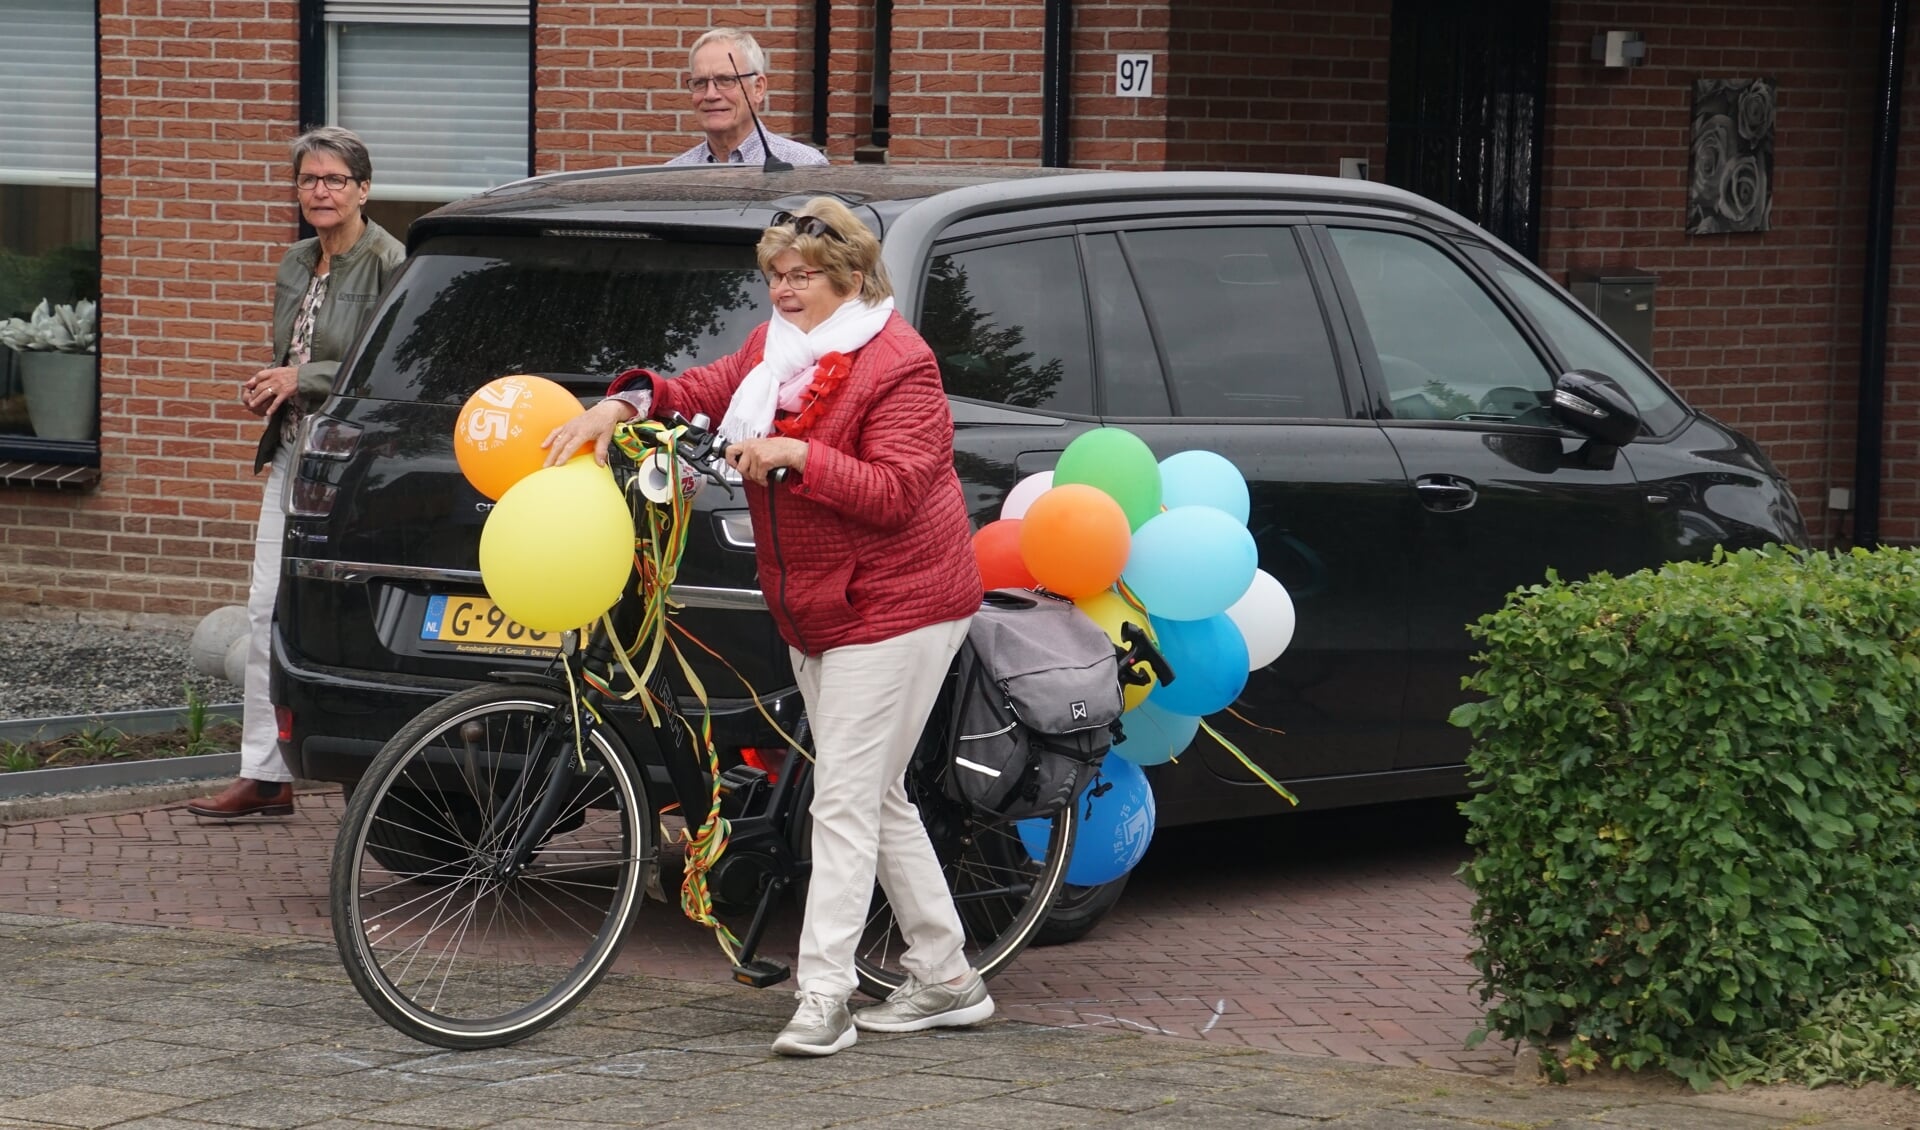 Met de versierde fiets op pad. Foto: Frank Vinkenvleugel